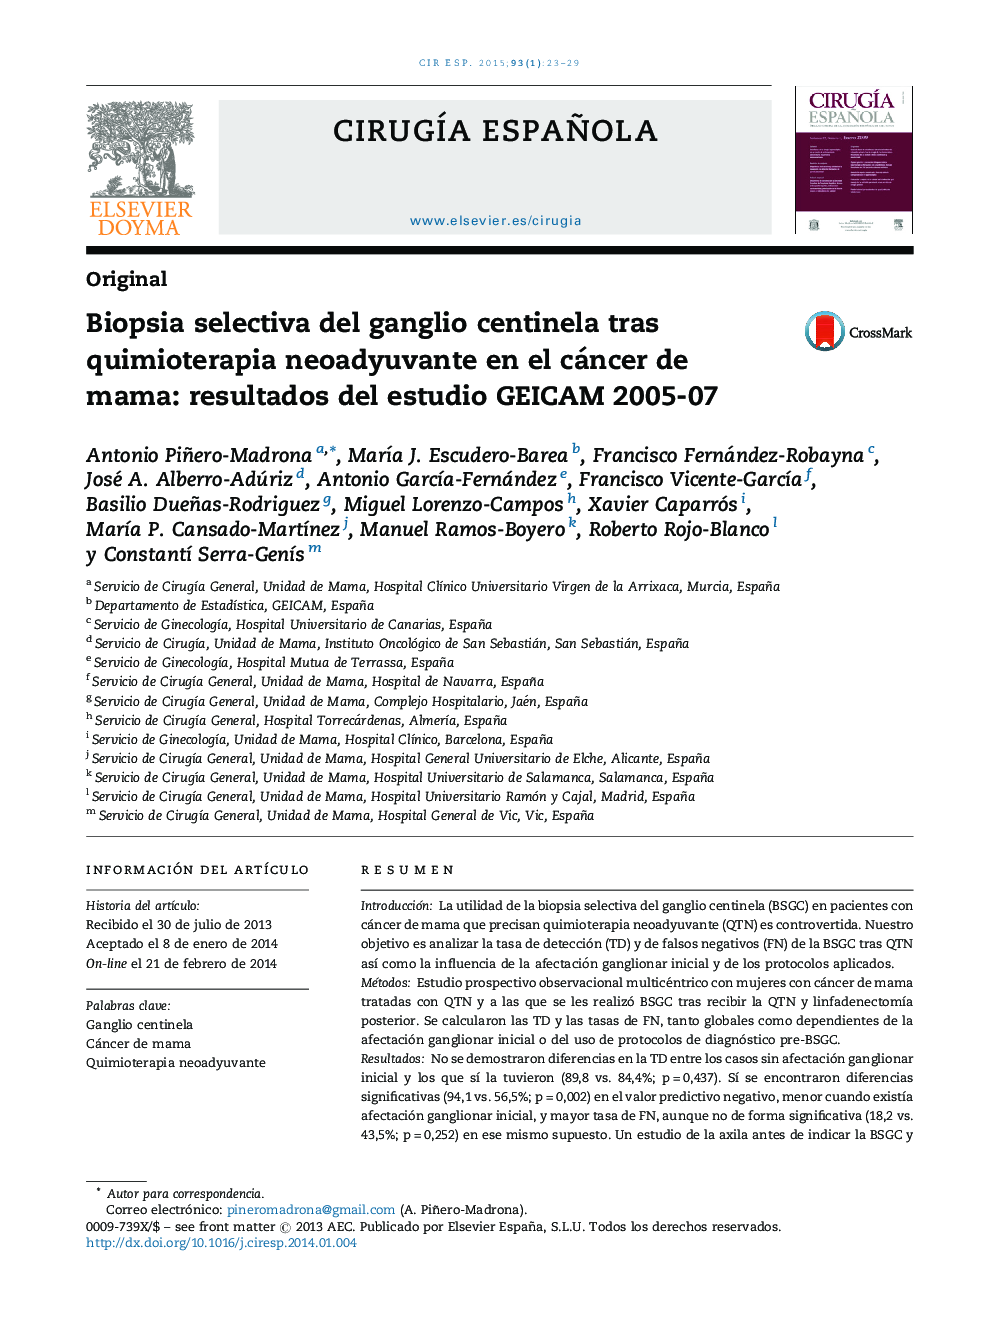 Biopsia selectiva del ganglio centinela tras quimioterapia neoadyuvante en el cáncer de mama: resultados del estudio GEICAM 2005-07